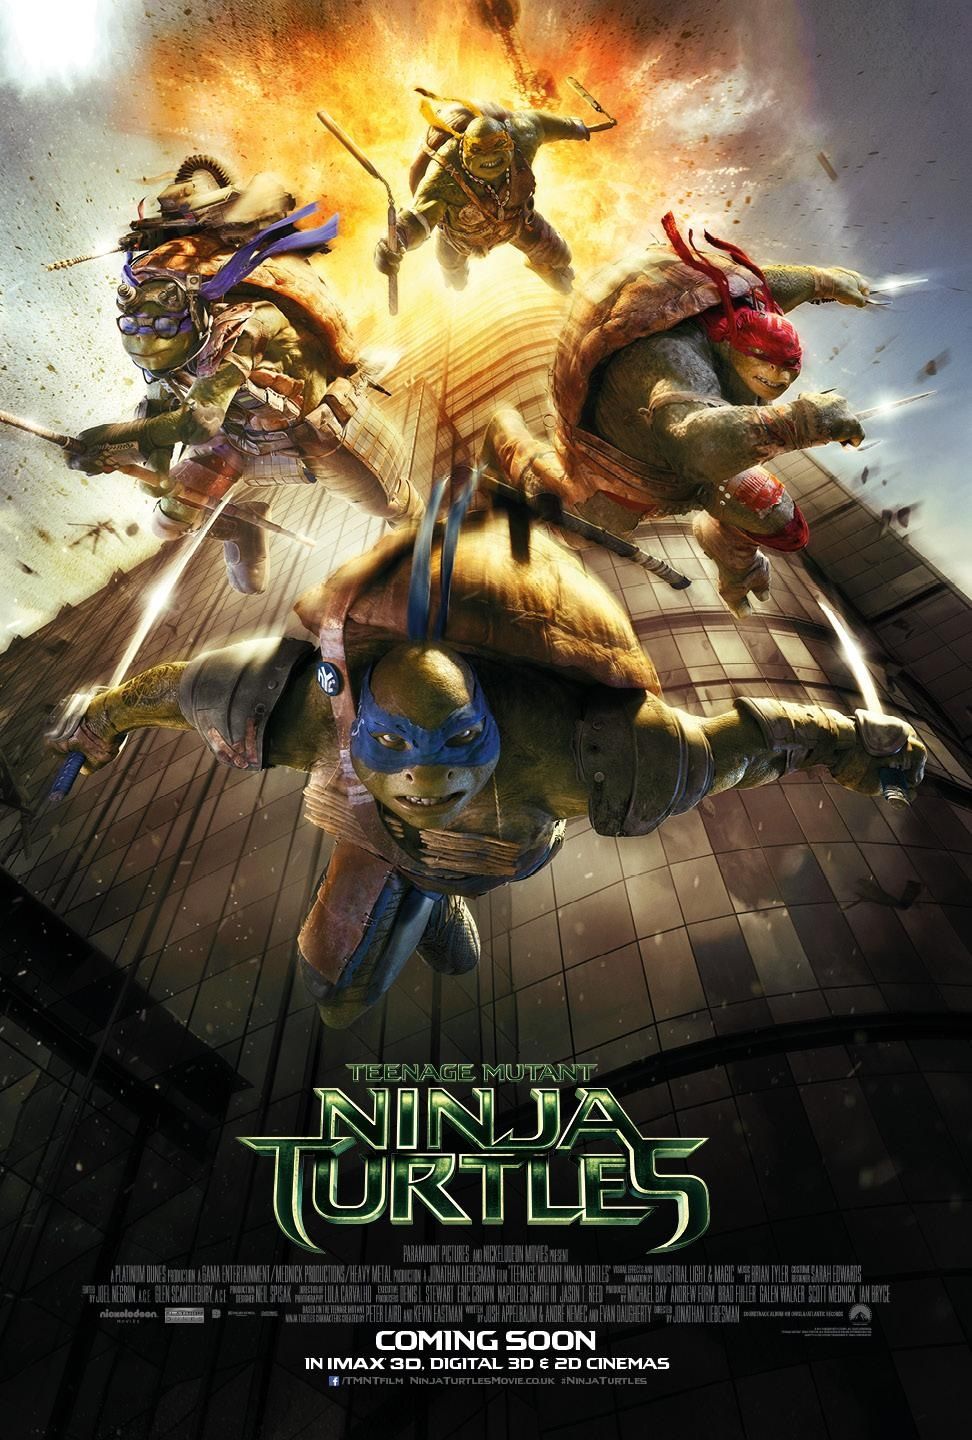 Teenage Mutant Ninja Turtels poster